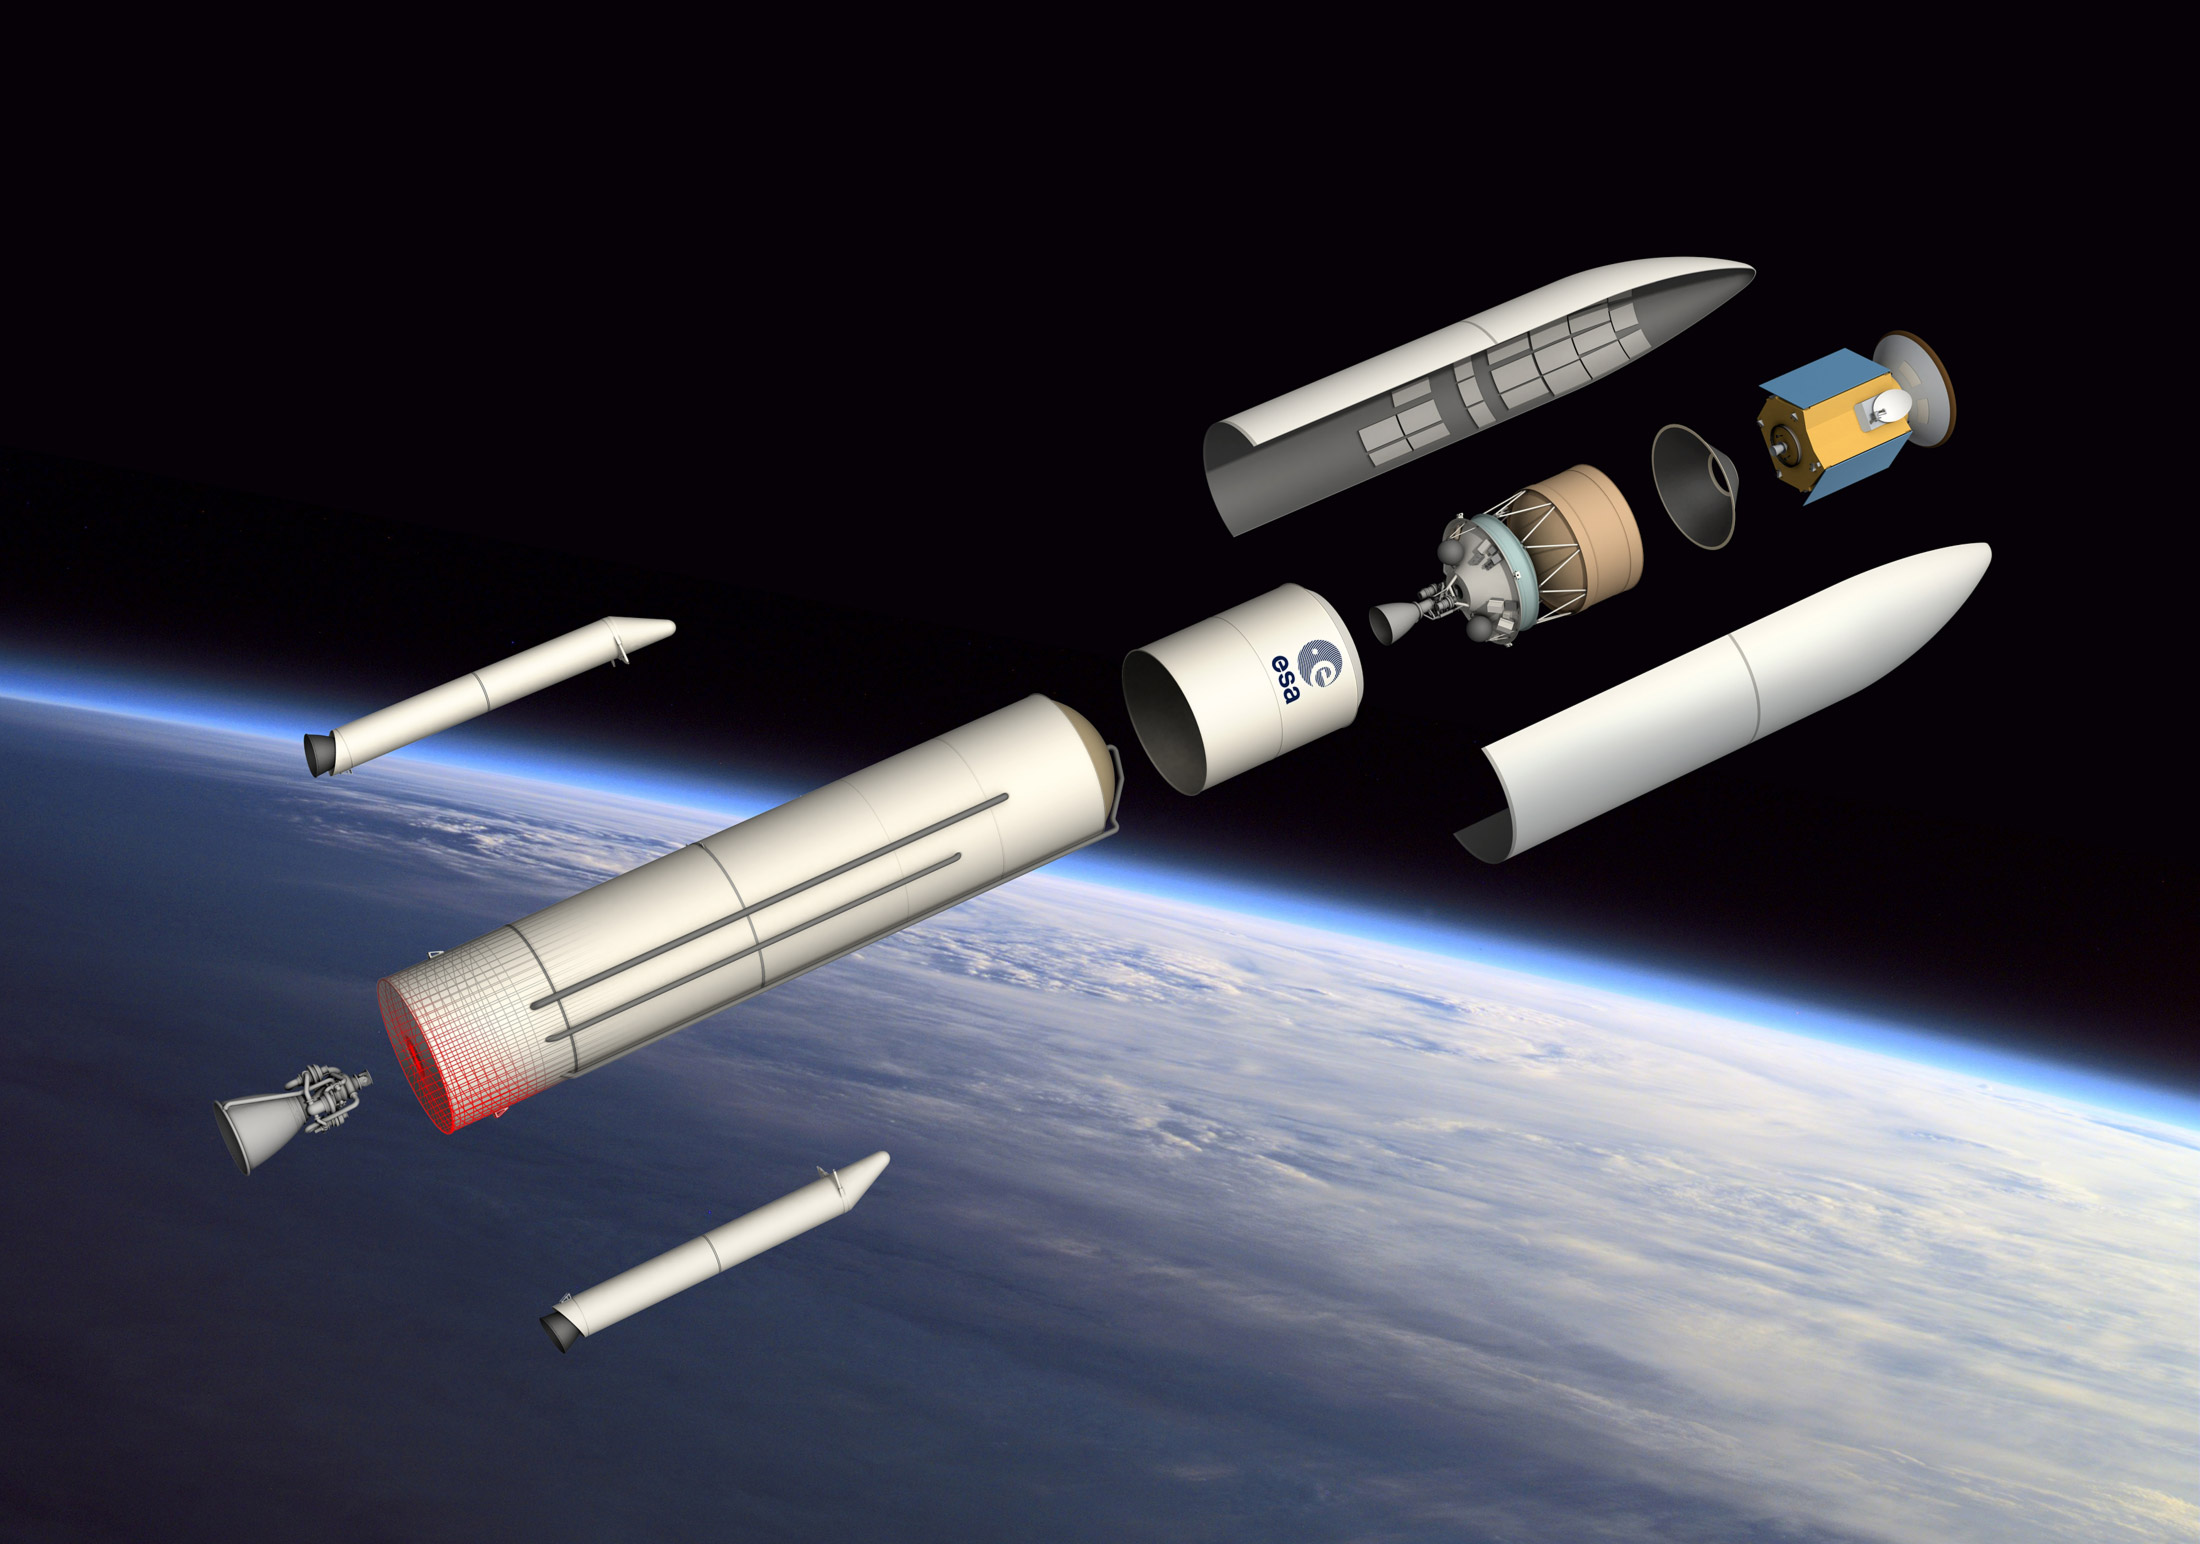 Avec Ariane 6, l'Esa abandonne le lancement double et revient au concept modulaire d’Ariane 4. Ce futur lanceur en ligne sera capable de mettre en orbite en lancement simple de 3 à 6,5 tonnes, ce qui représente l'essentiel des missions dites institutionnelles et commerciales que l'on peut prévoir à l'horizon 2020. © D. Ducros, Esa